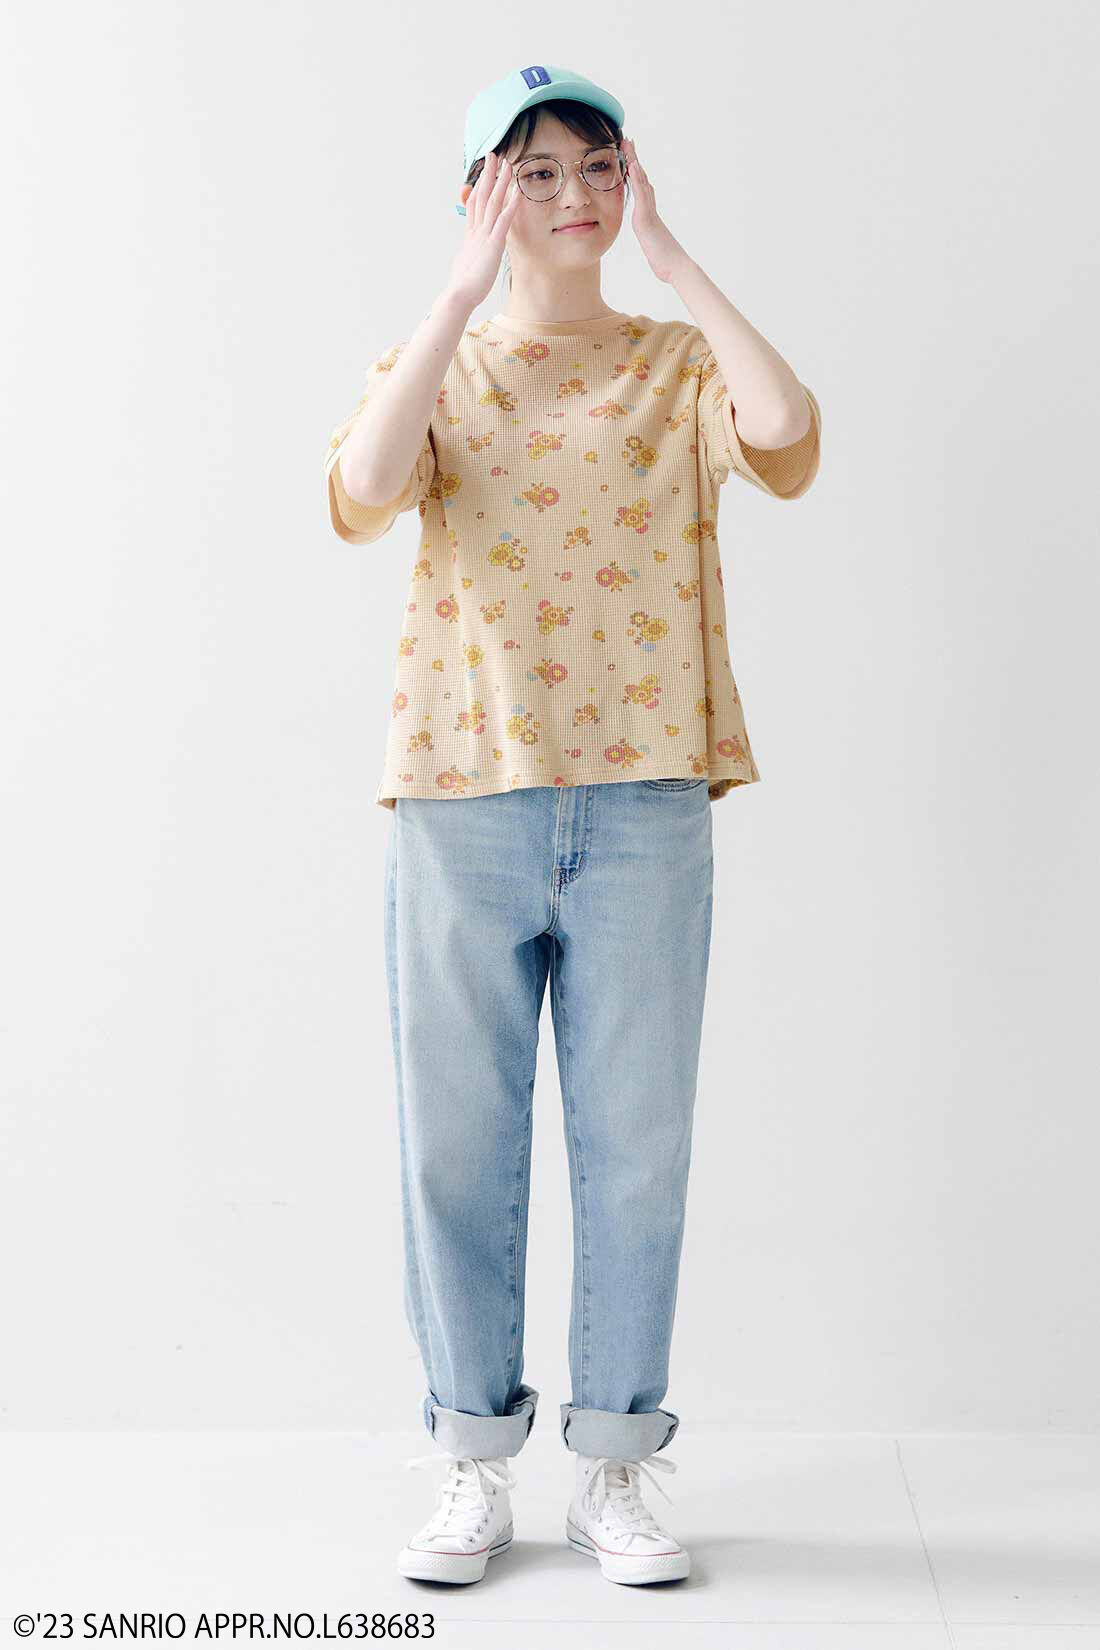 シロップ．|サンリオキャラクターコラボ お花模様のコットンワッフルTシャツの会|身長162cm、Mサイズ着用